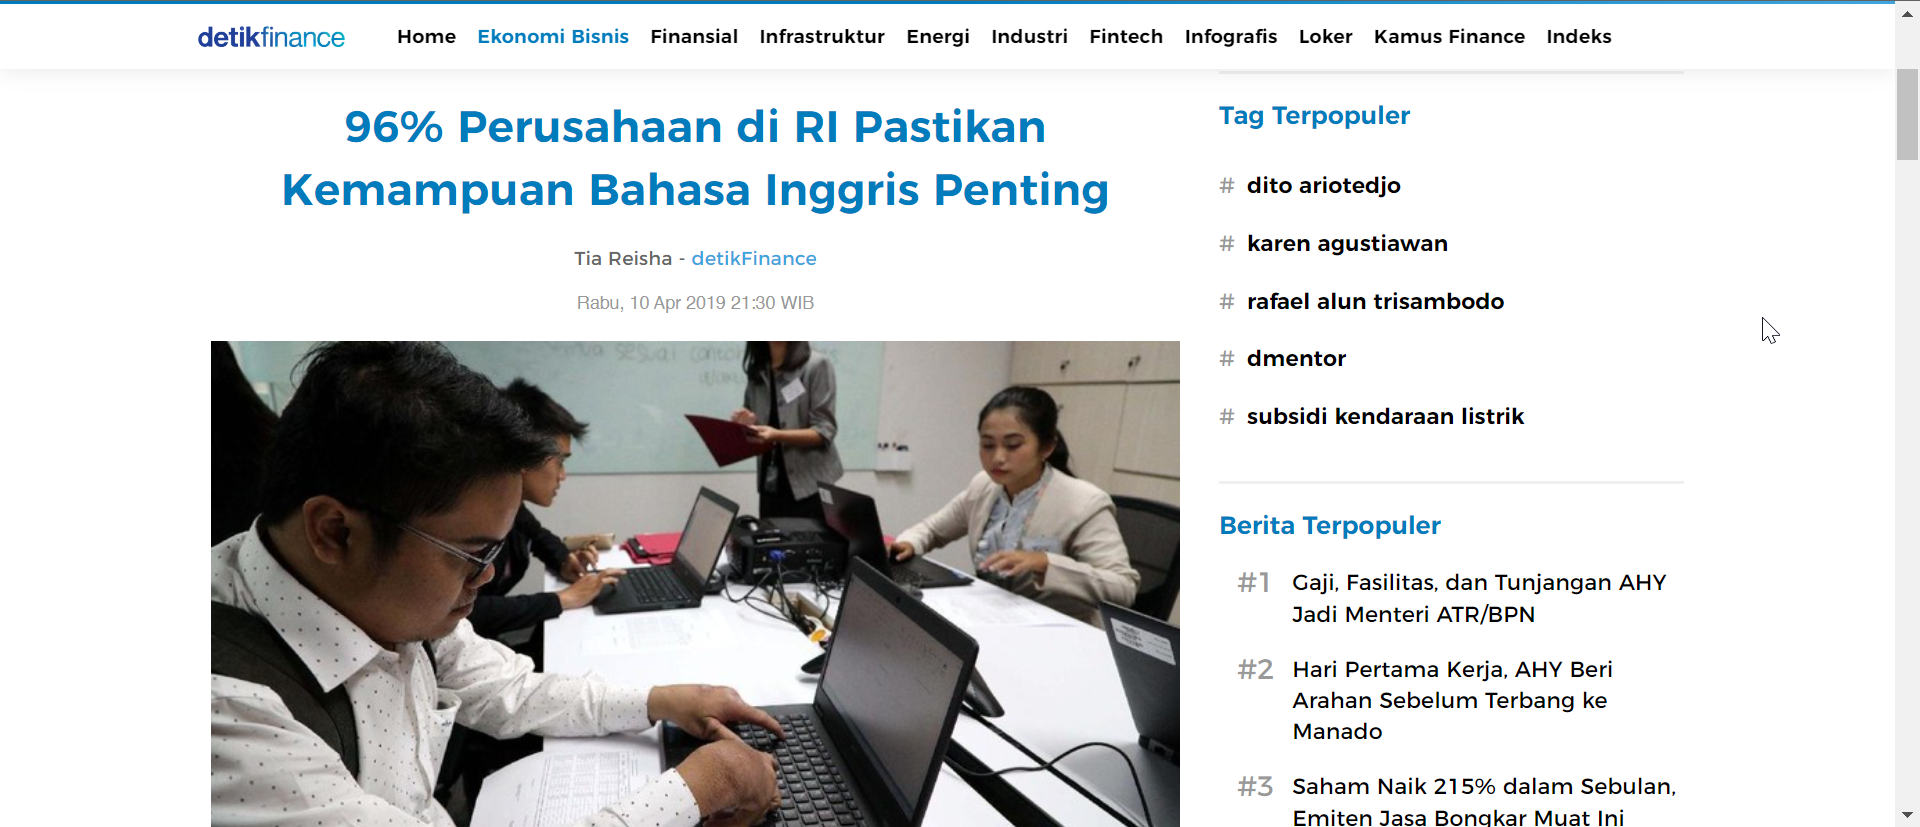 Kemampuan bahasa Inggris penting bagi 96% perusahaan di Indonesia